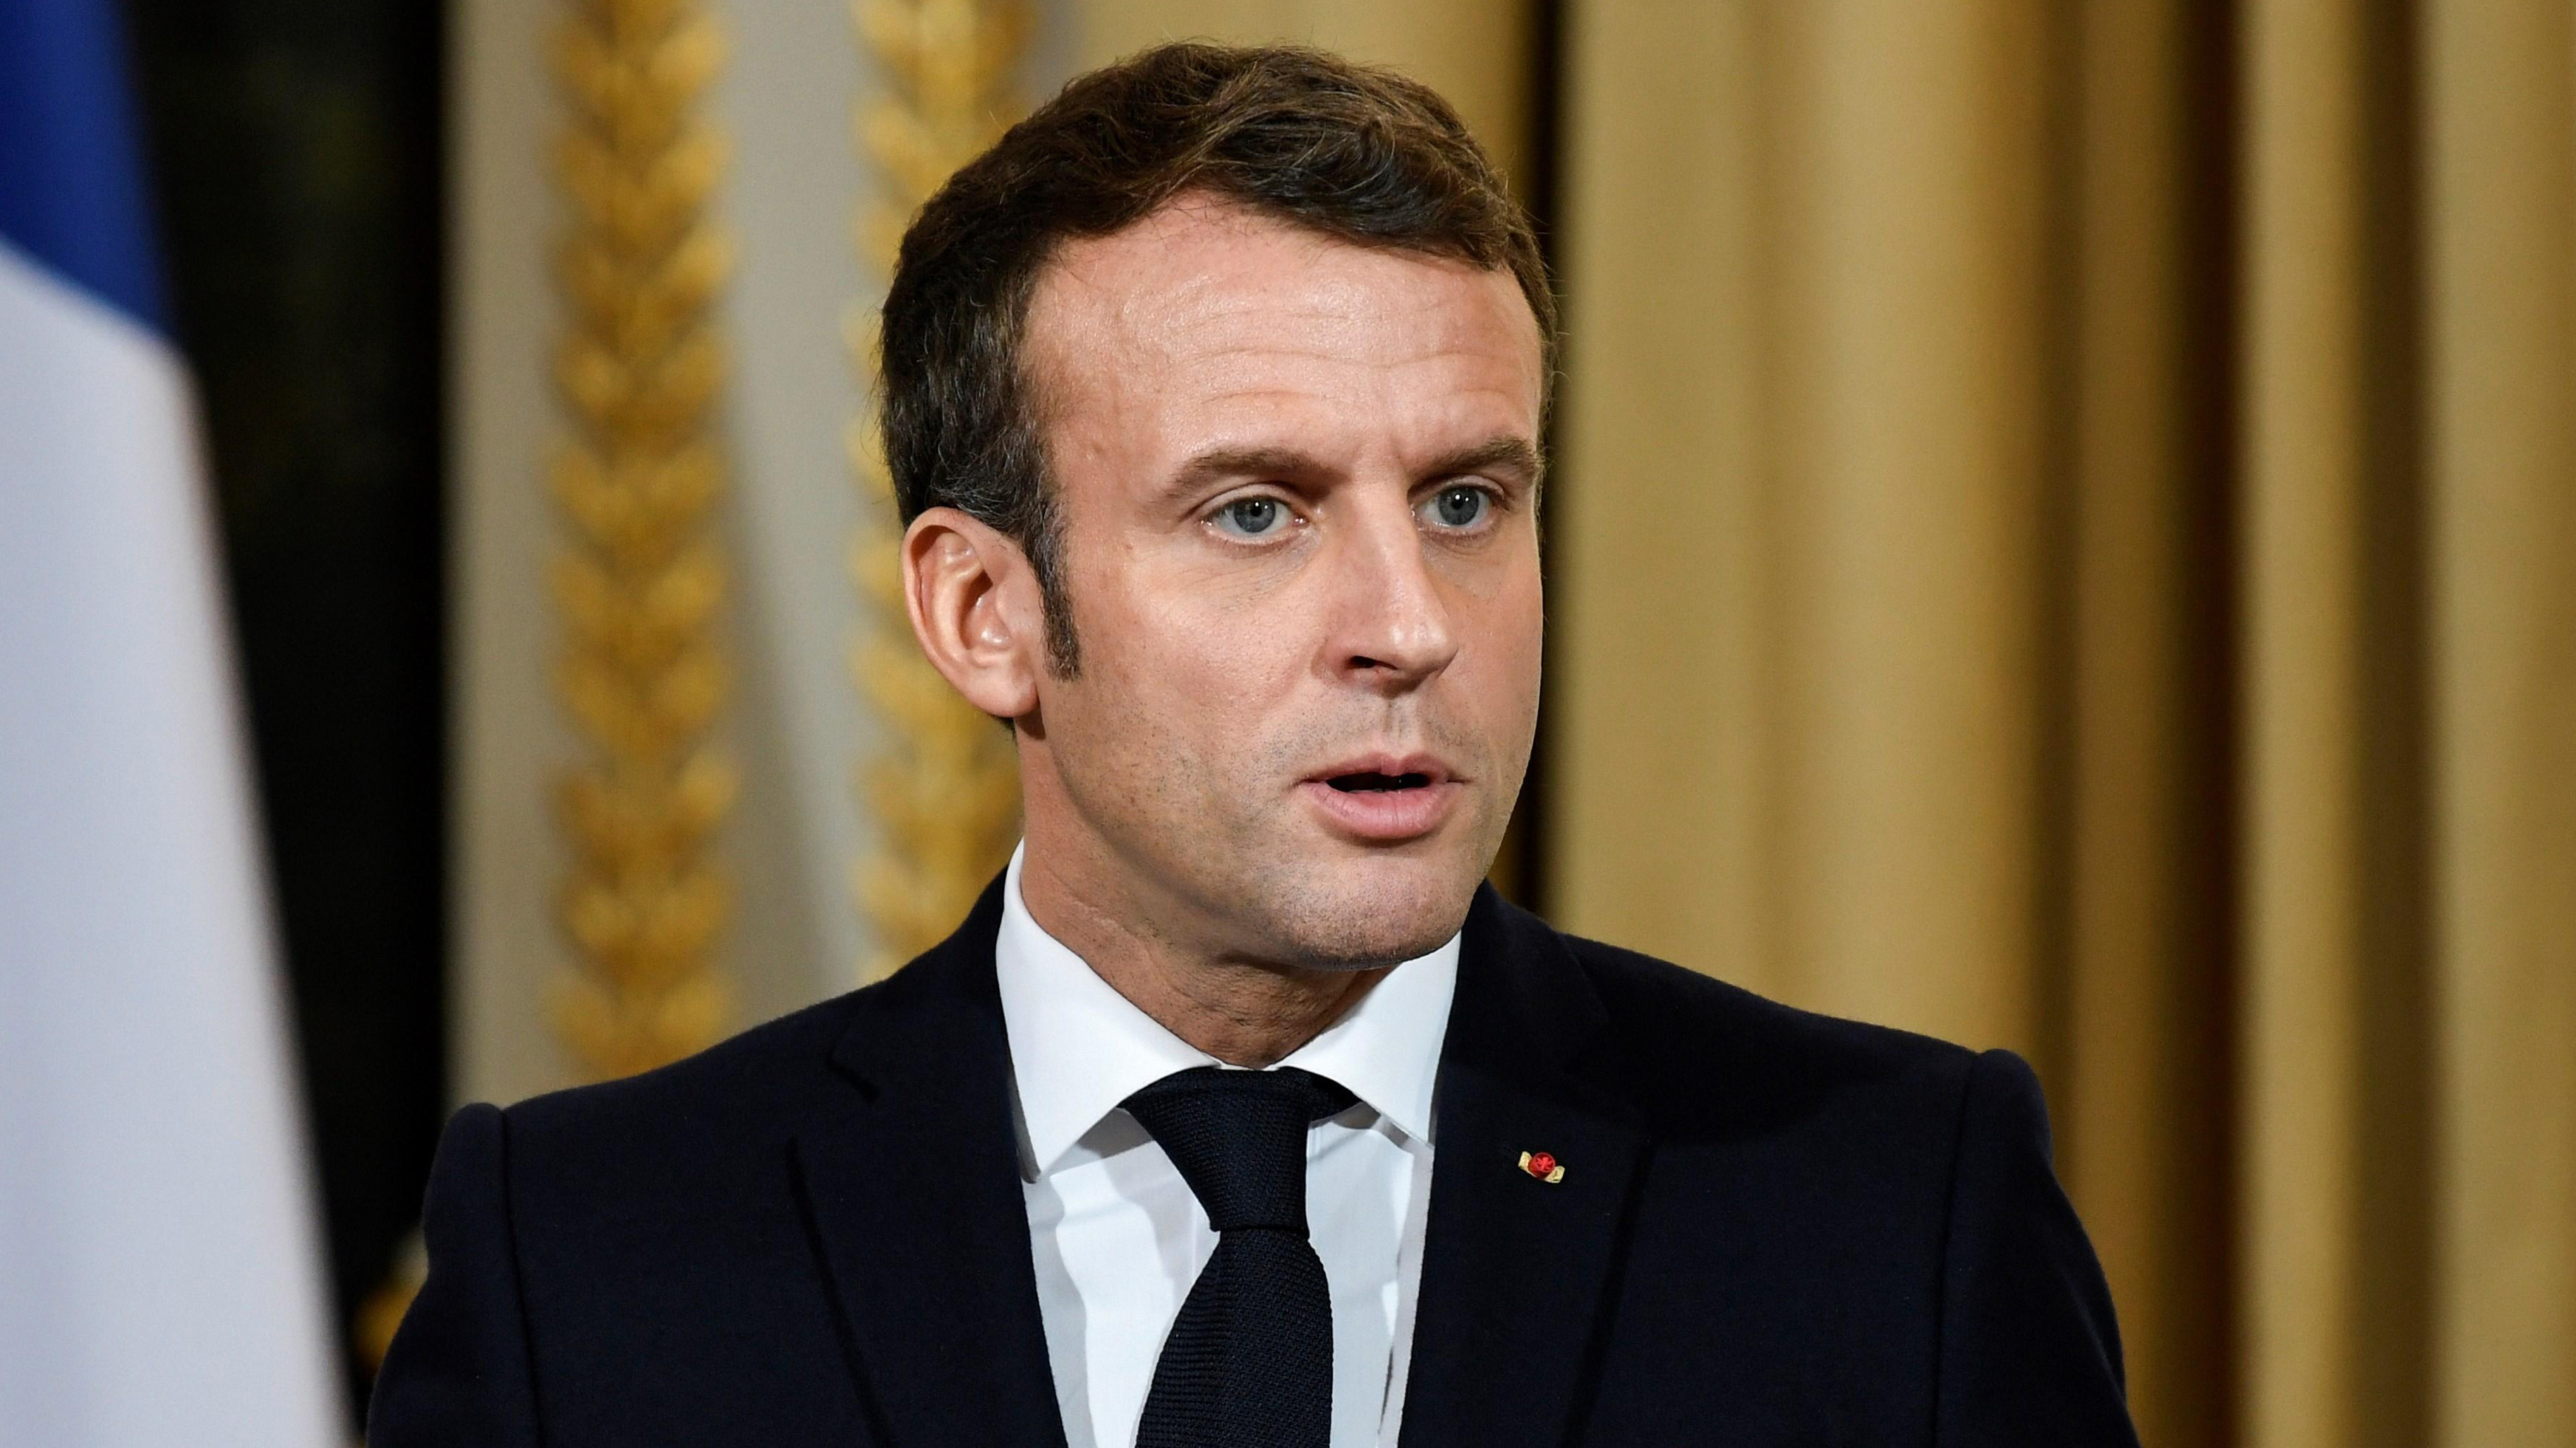 El detalle de la reforma de pensiones que Macron busca implementar en Francia y que ha provocado paros y huelgas